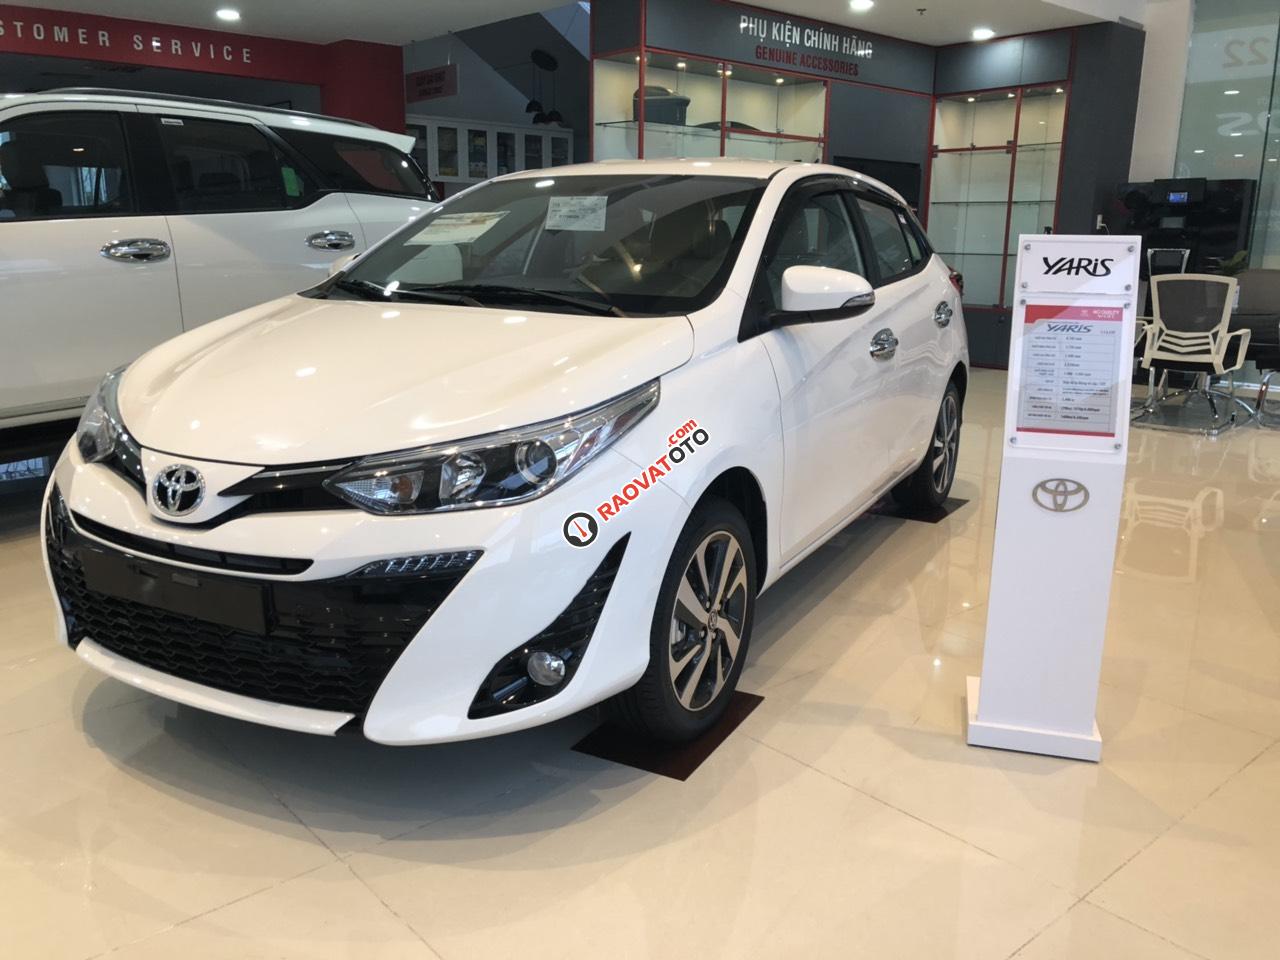 Bán Toyota Yaris 2019 giá tốt - khuyến mãi hấp dẫn - giao xe ngay - 0909 399 882-0